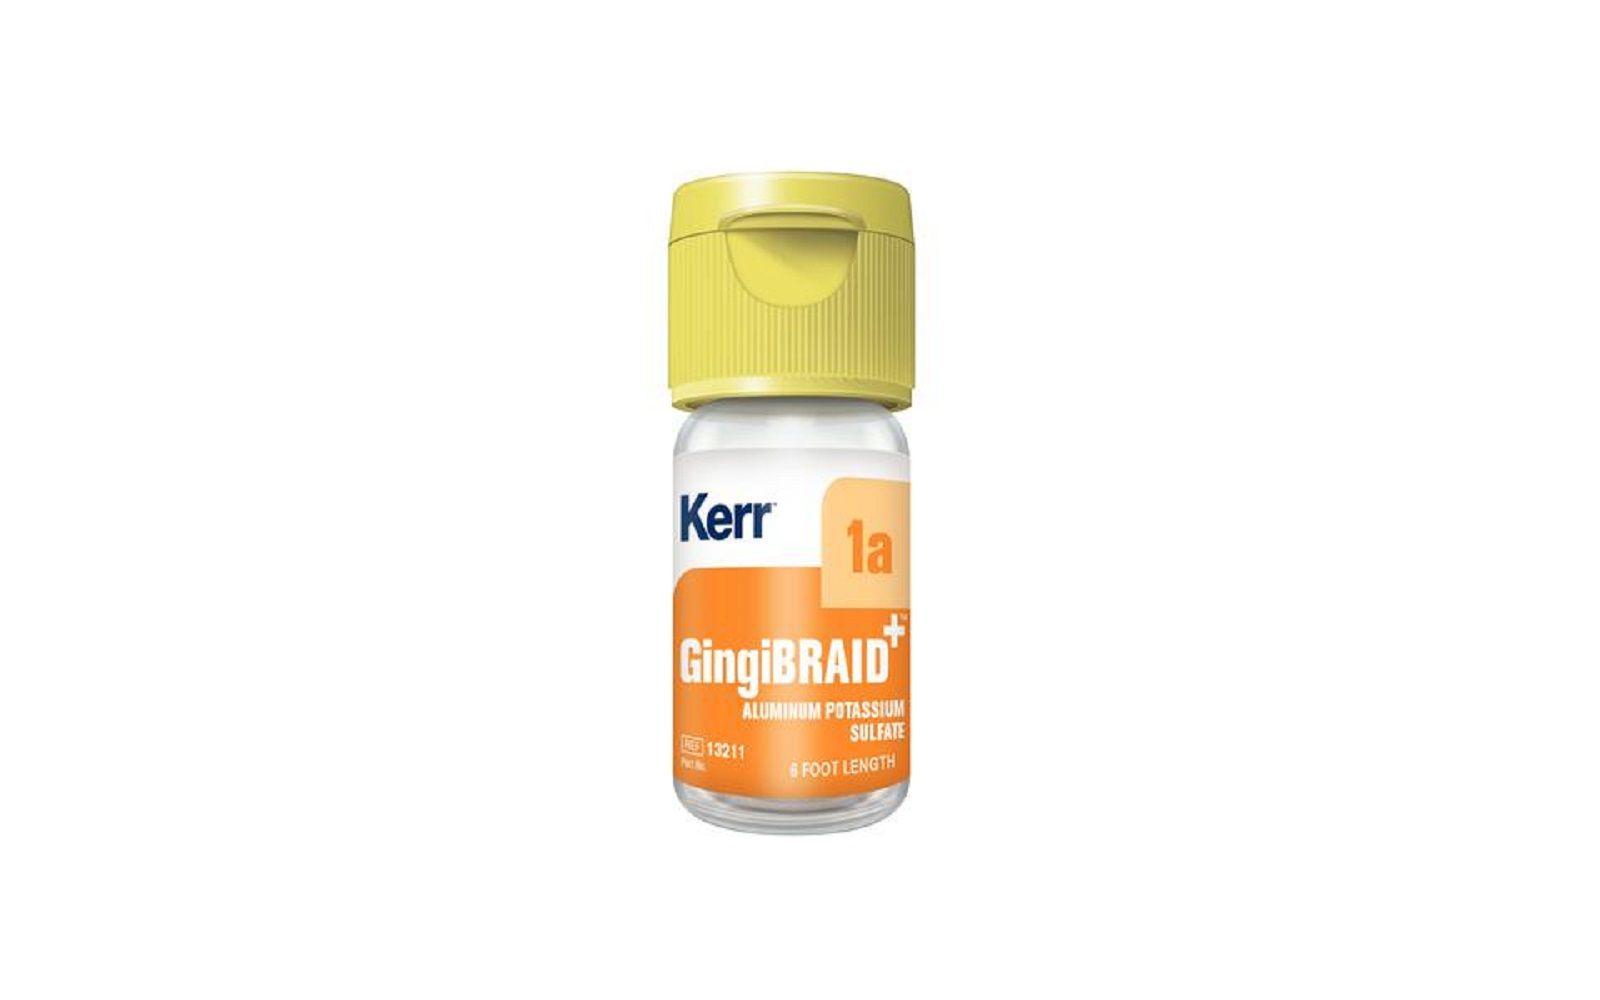 Gingibraid+ braided retraction cord – medicated (aluminum potassium sulfate 10%) - kerr restoratives